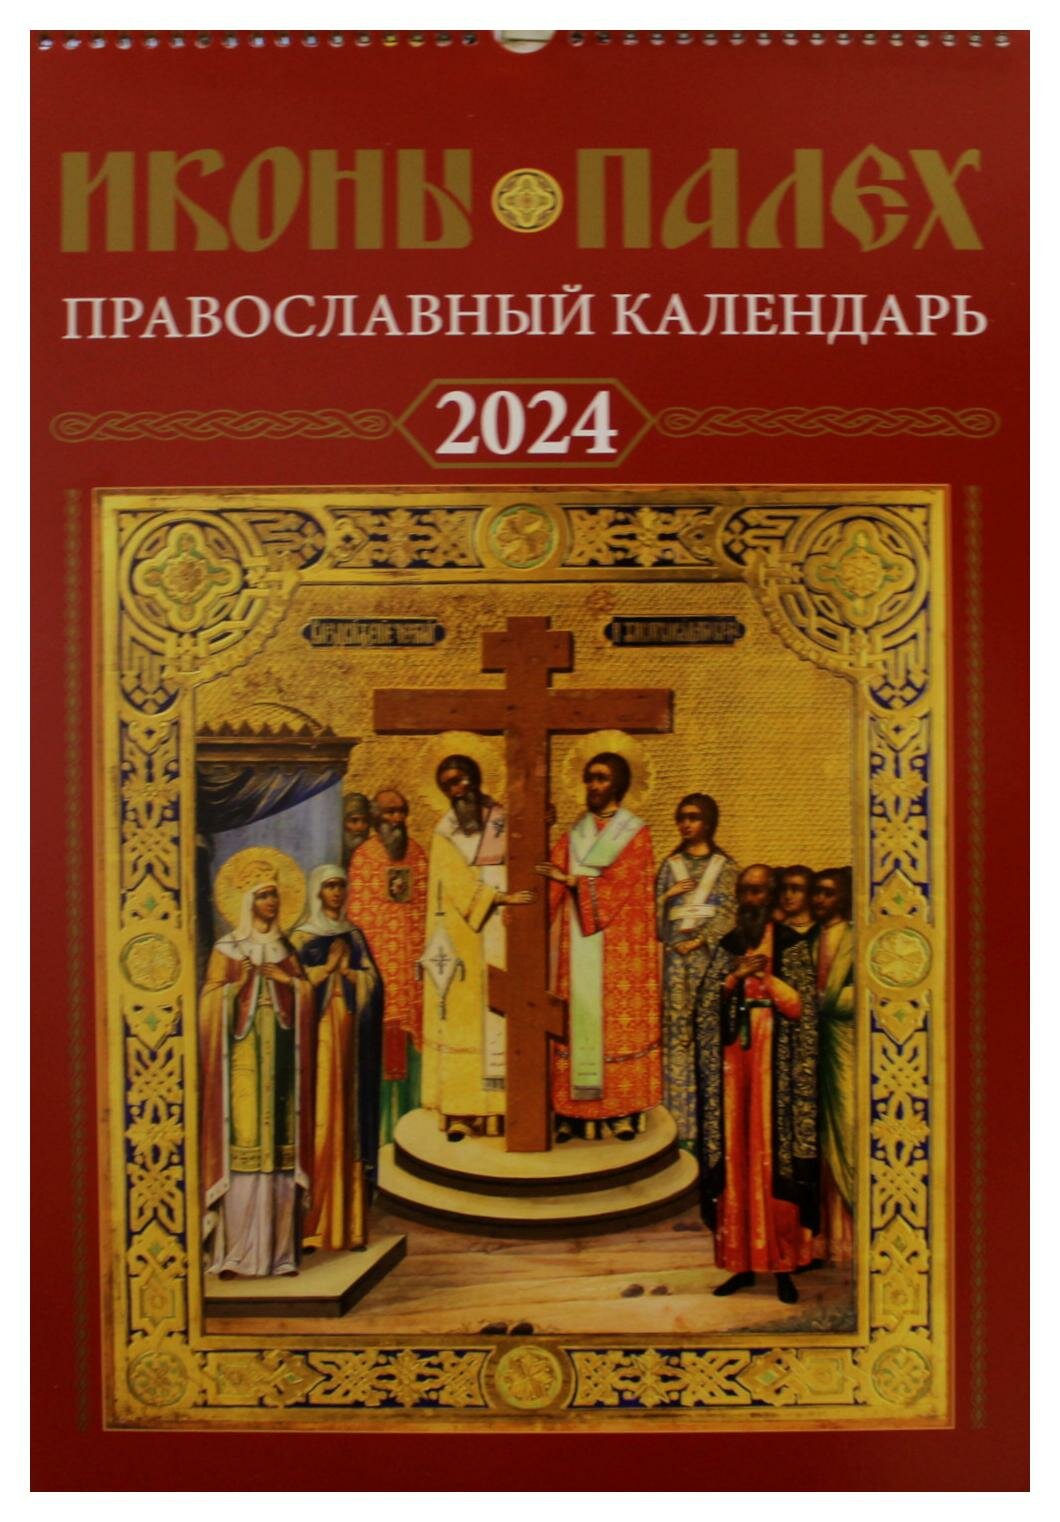 Иконы Палех: православный календарь на 2024 год. Синопсисъ